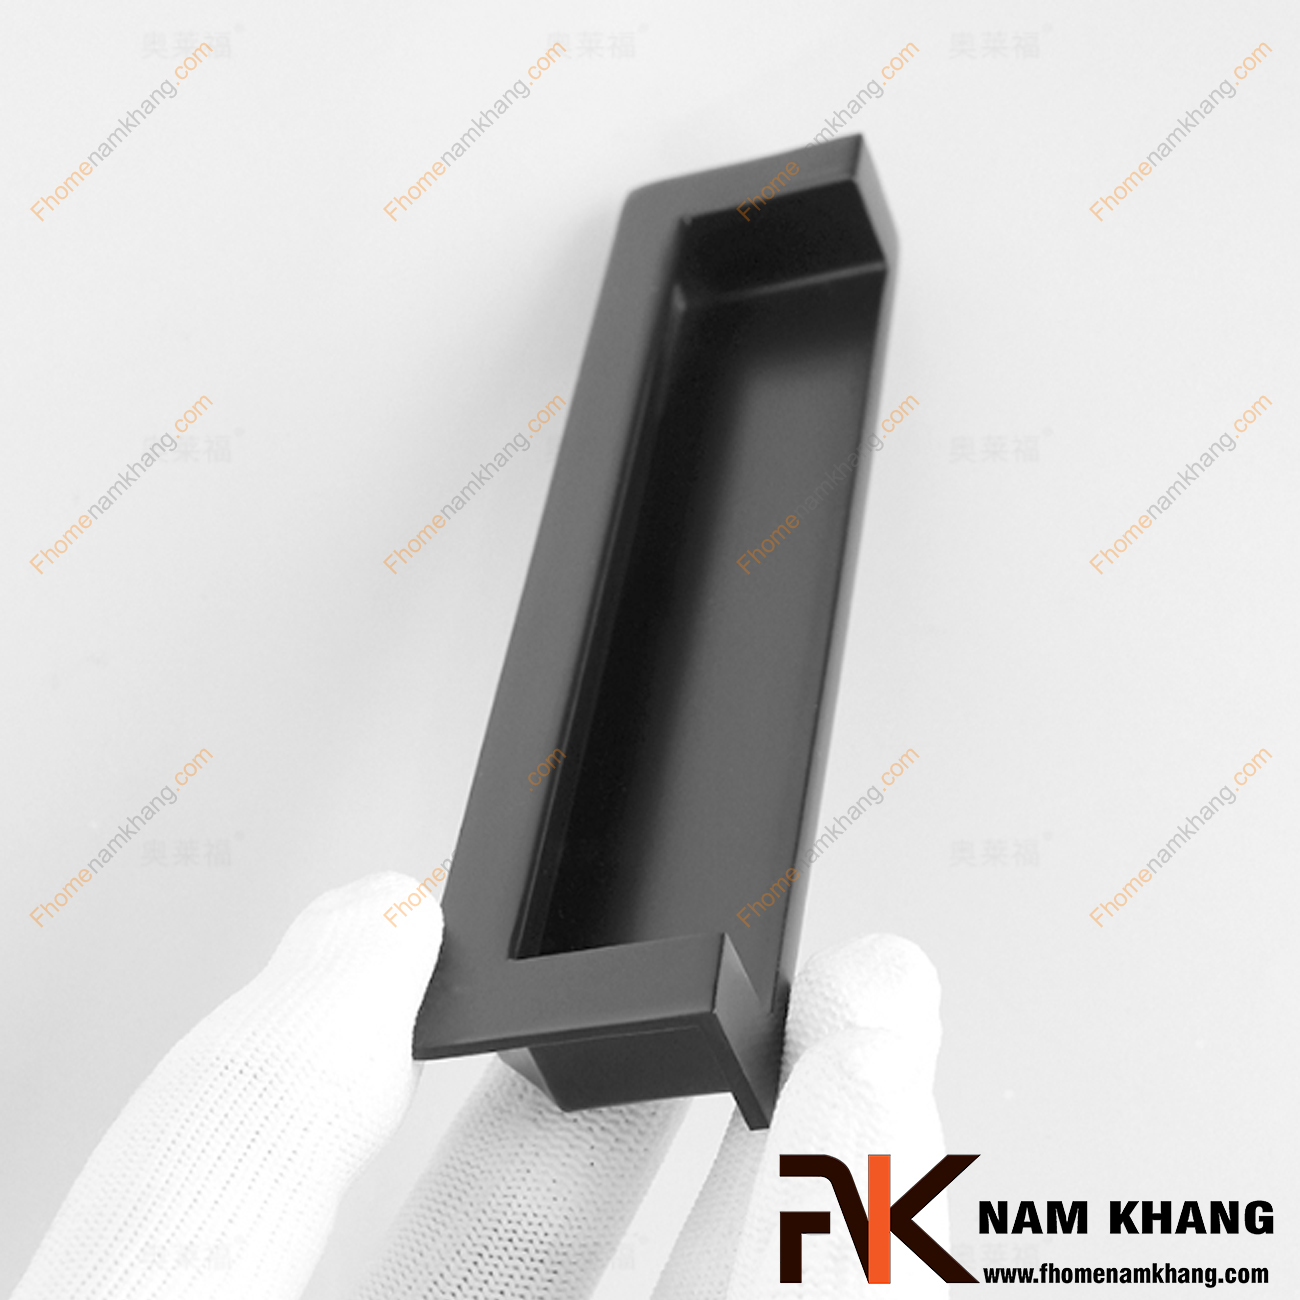 Tay nắm tủ dạng thanh âm màu đen mờ NK410L-DM , một mẫu tay nắm cửa tủ, cửa chính rất độc đáo. Được thiết kế với khuôn dạng thanh mảnh vuông góc và lắp đặt âm vào bên trong cánh cửa, điều này tăng khả năng ghép nối bền chặt hơn.